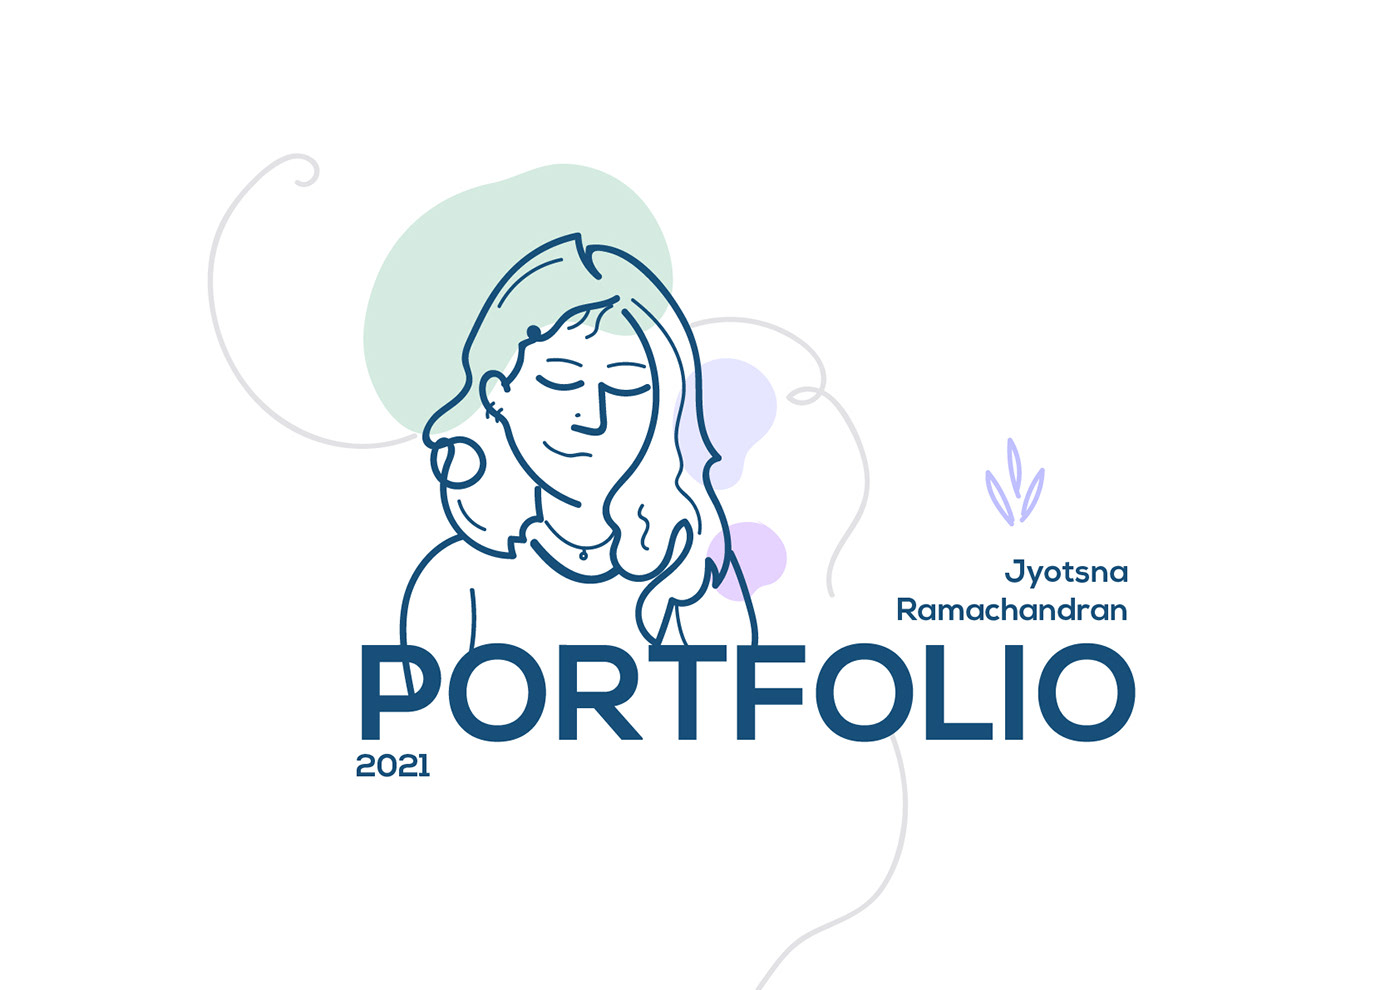 graphic design  graphic design portfolio portfolio about me Resume design portfolio illustrations projects